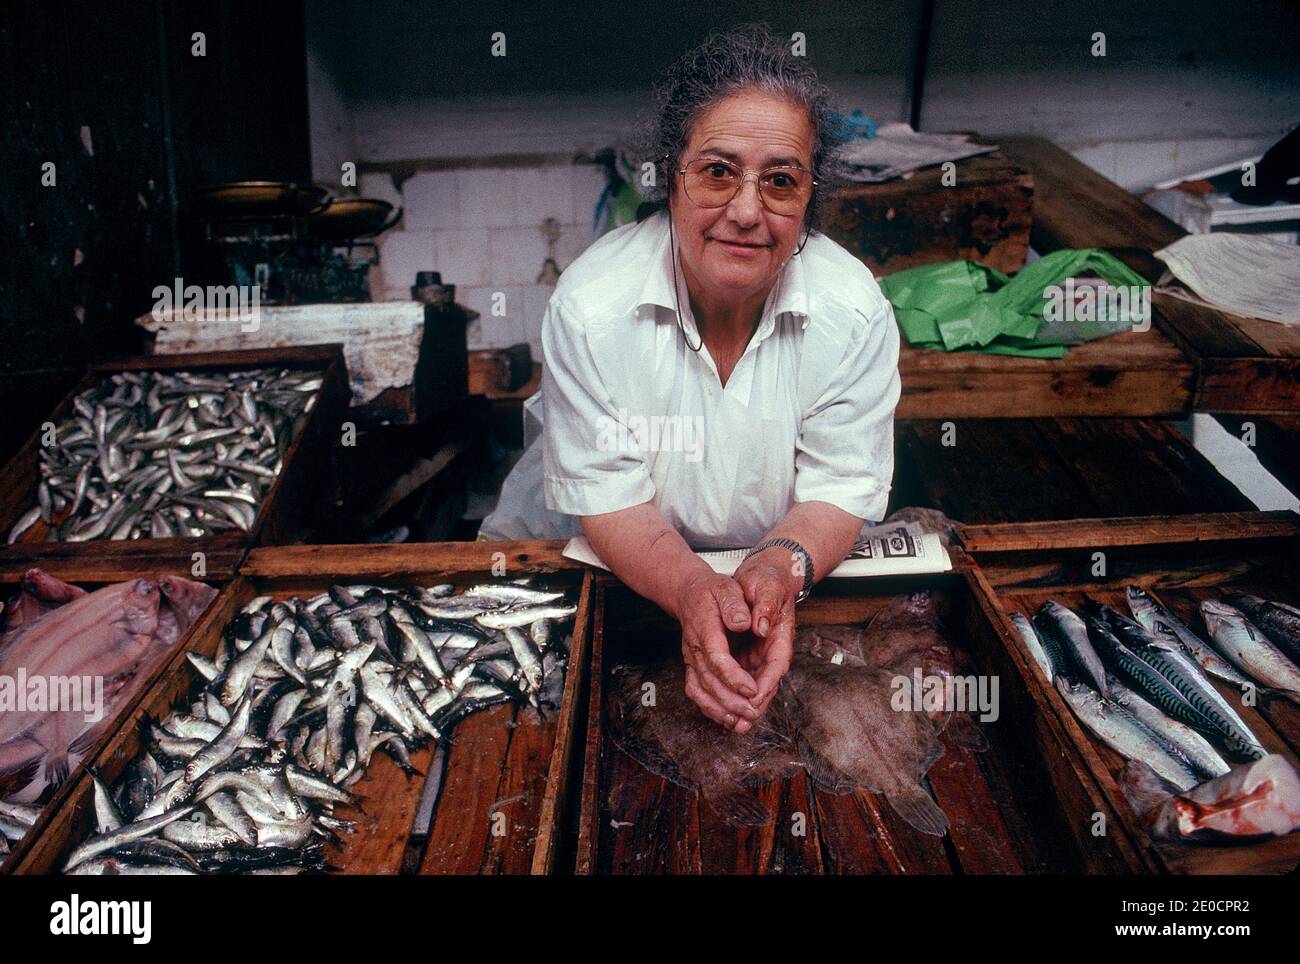 España/Santiago de Compostela/ Fishmonger vende pescado fresco en los mercados de Santiago de Compostela. Foto de stock